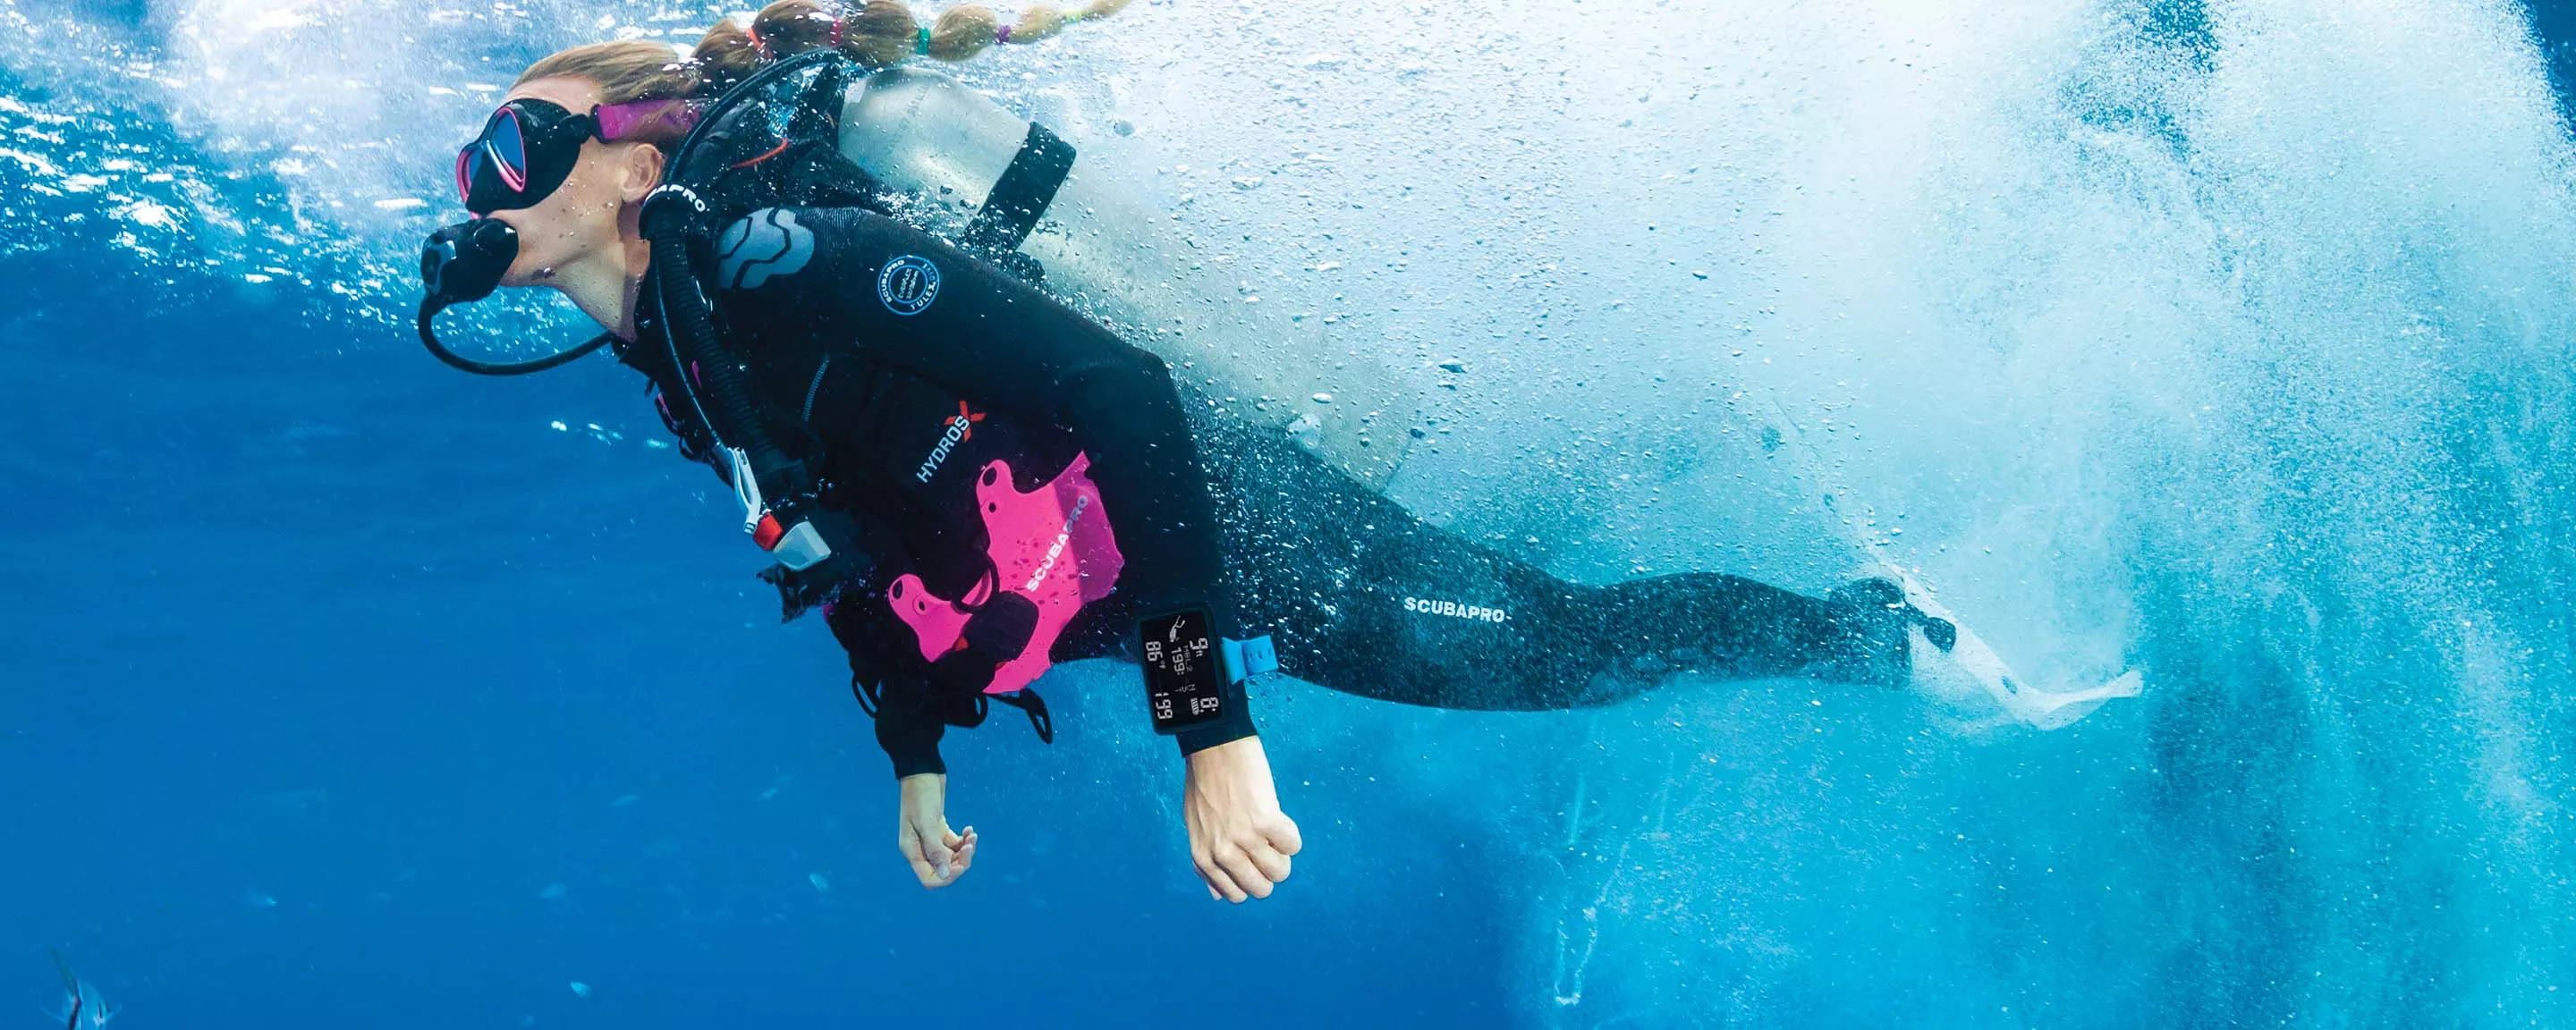 Best Dive Gear for Women